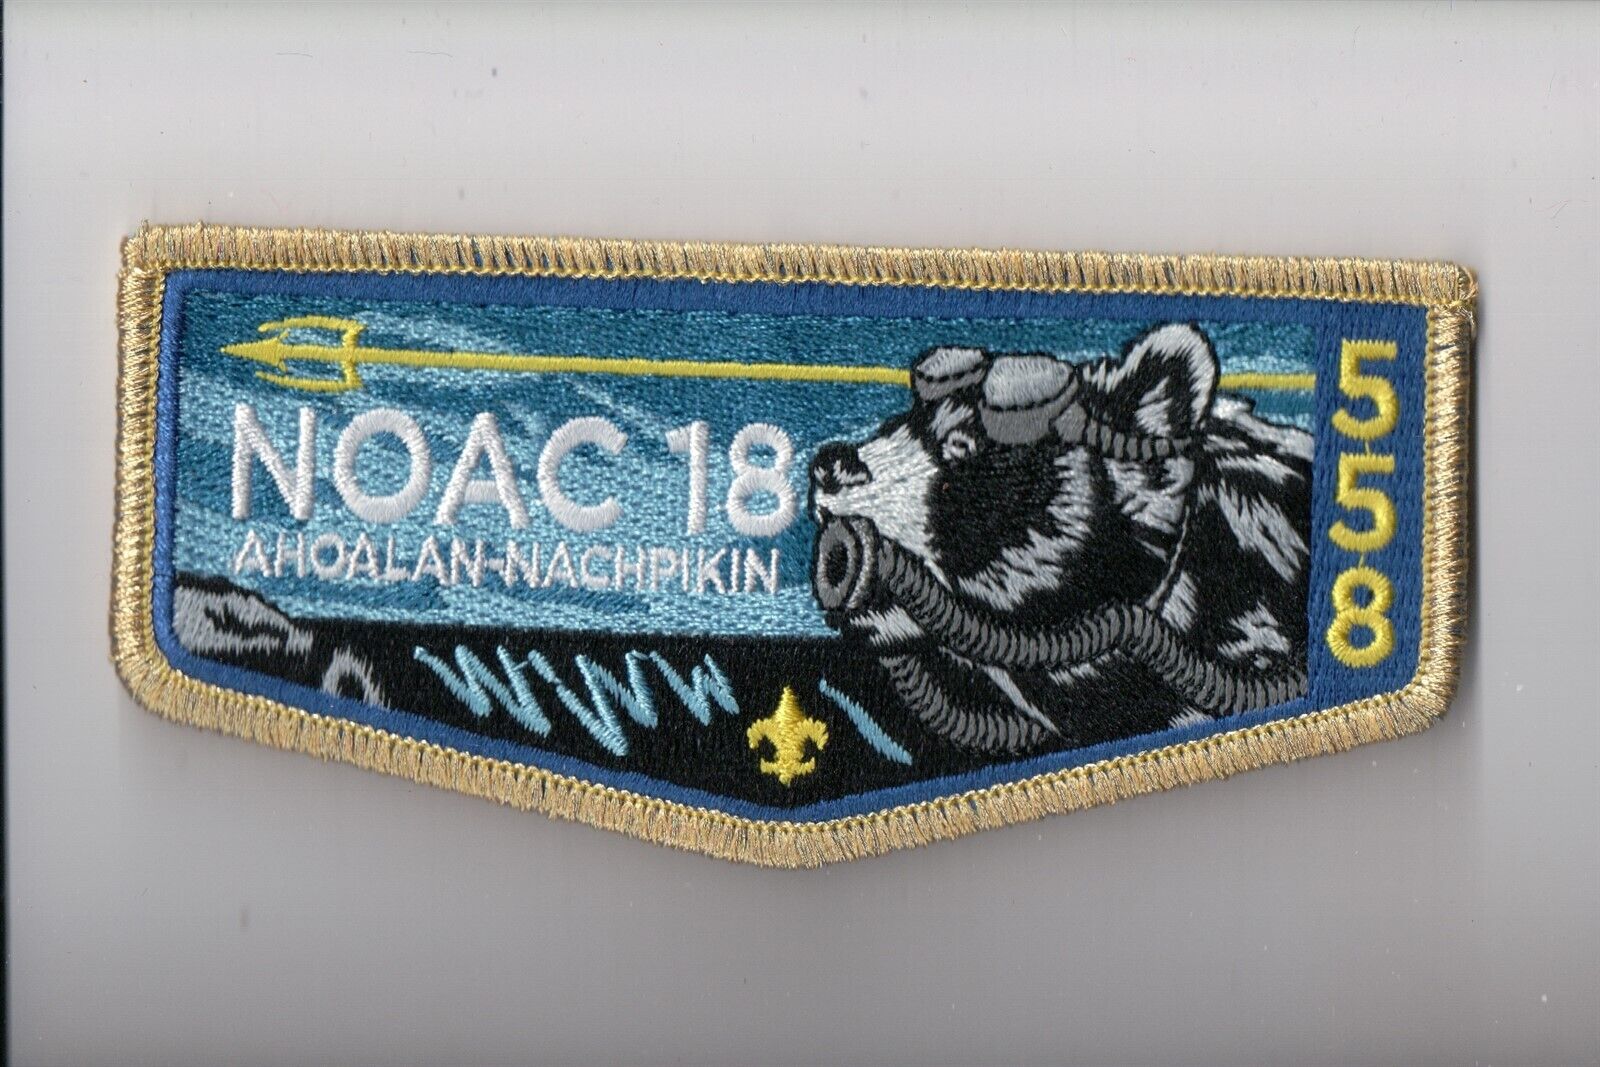 Lodge 558 Ahoalan Nachpikin 2018 NOAC OA flap (Gold Mylar B)